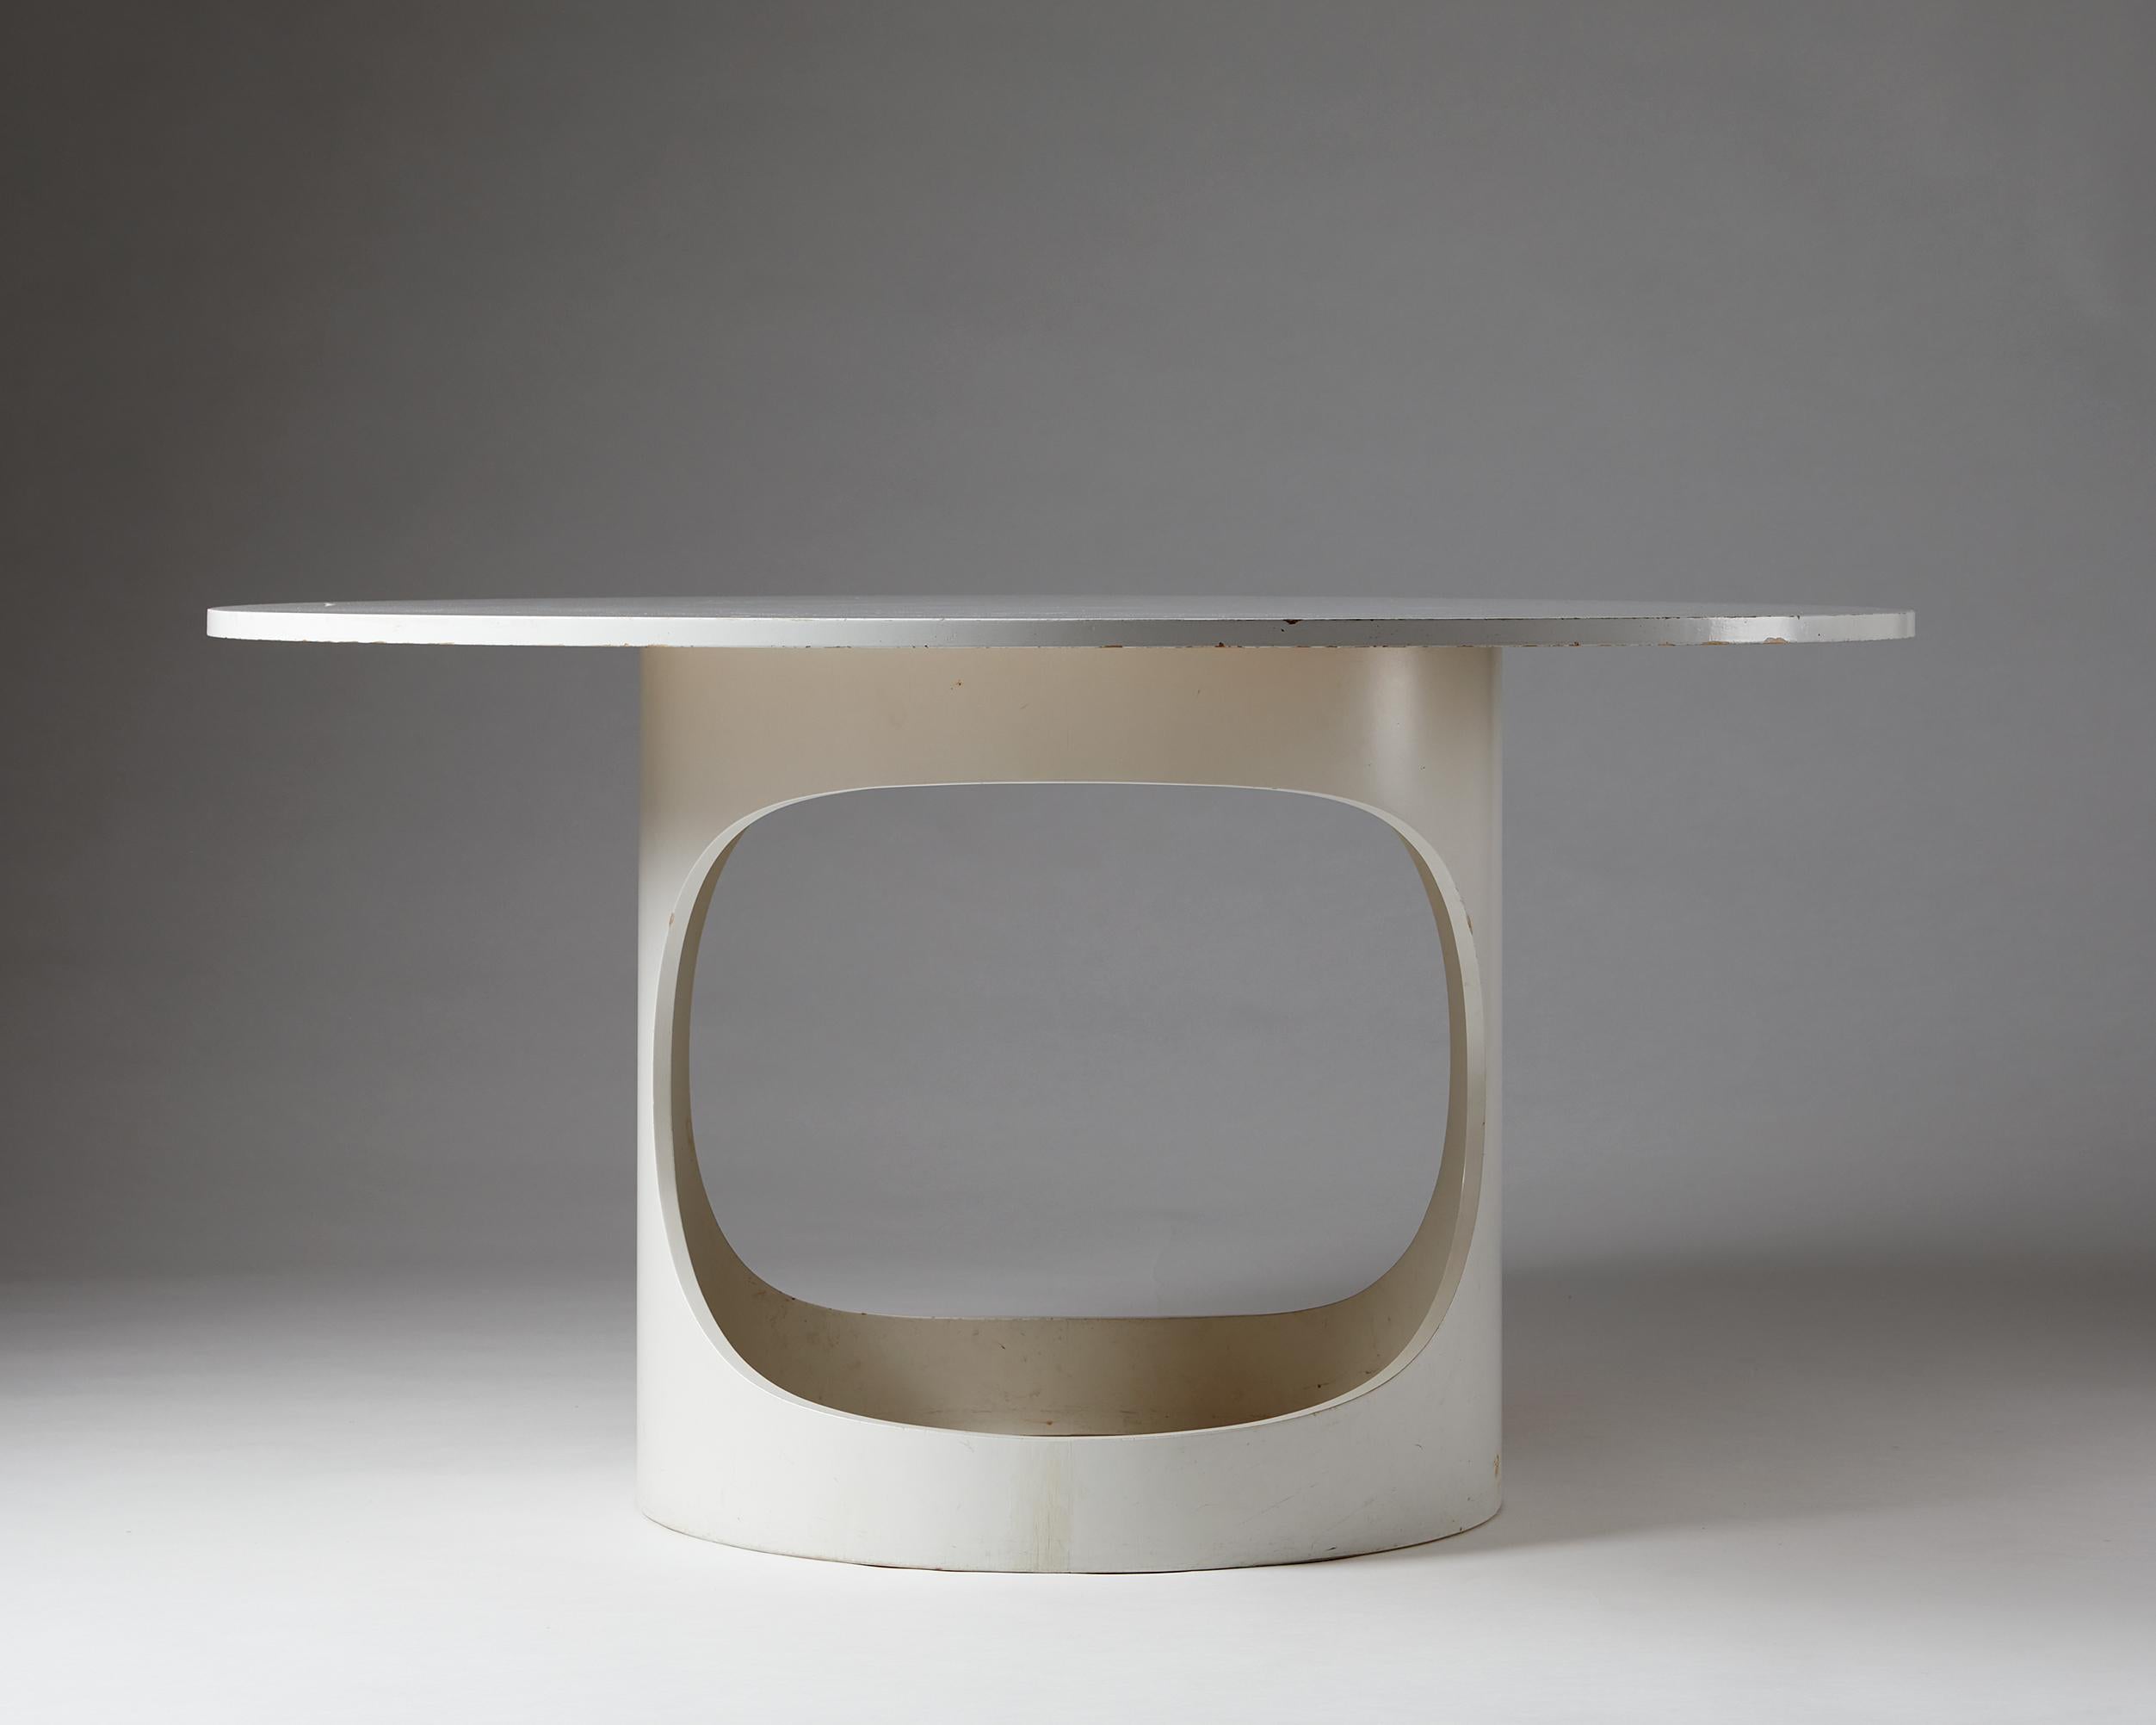 Danish Dining Table, “Pre Pop” Designed by Arne Jacobsen, Denmark, 1960s